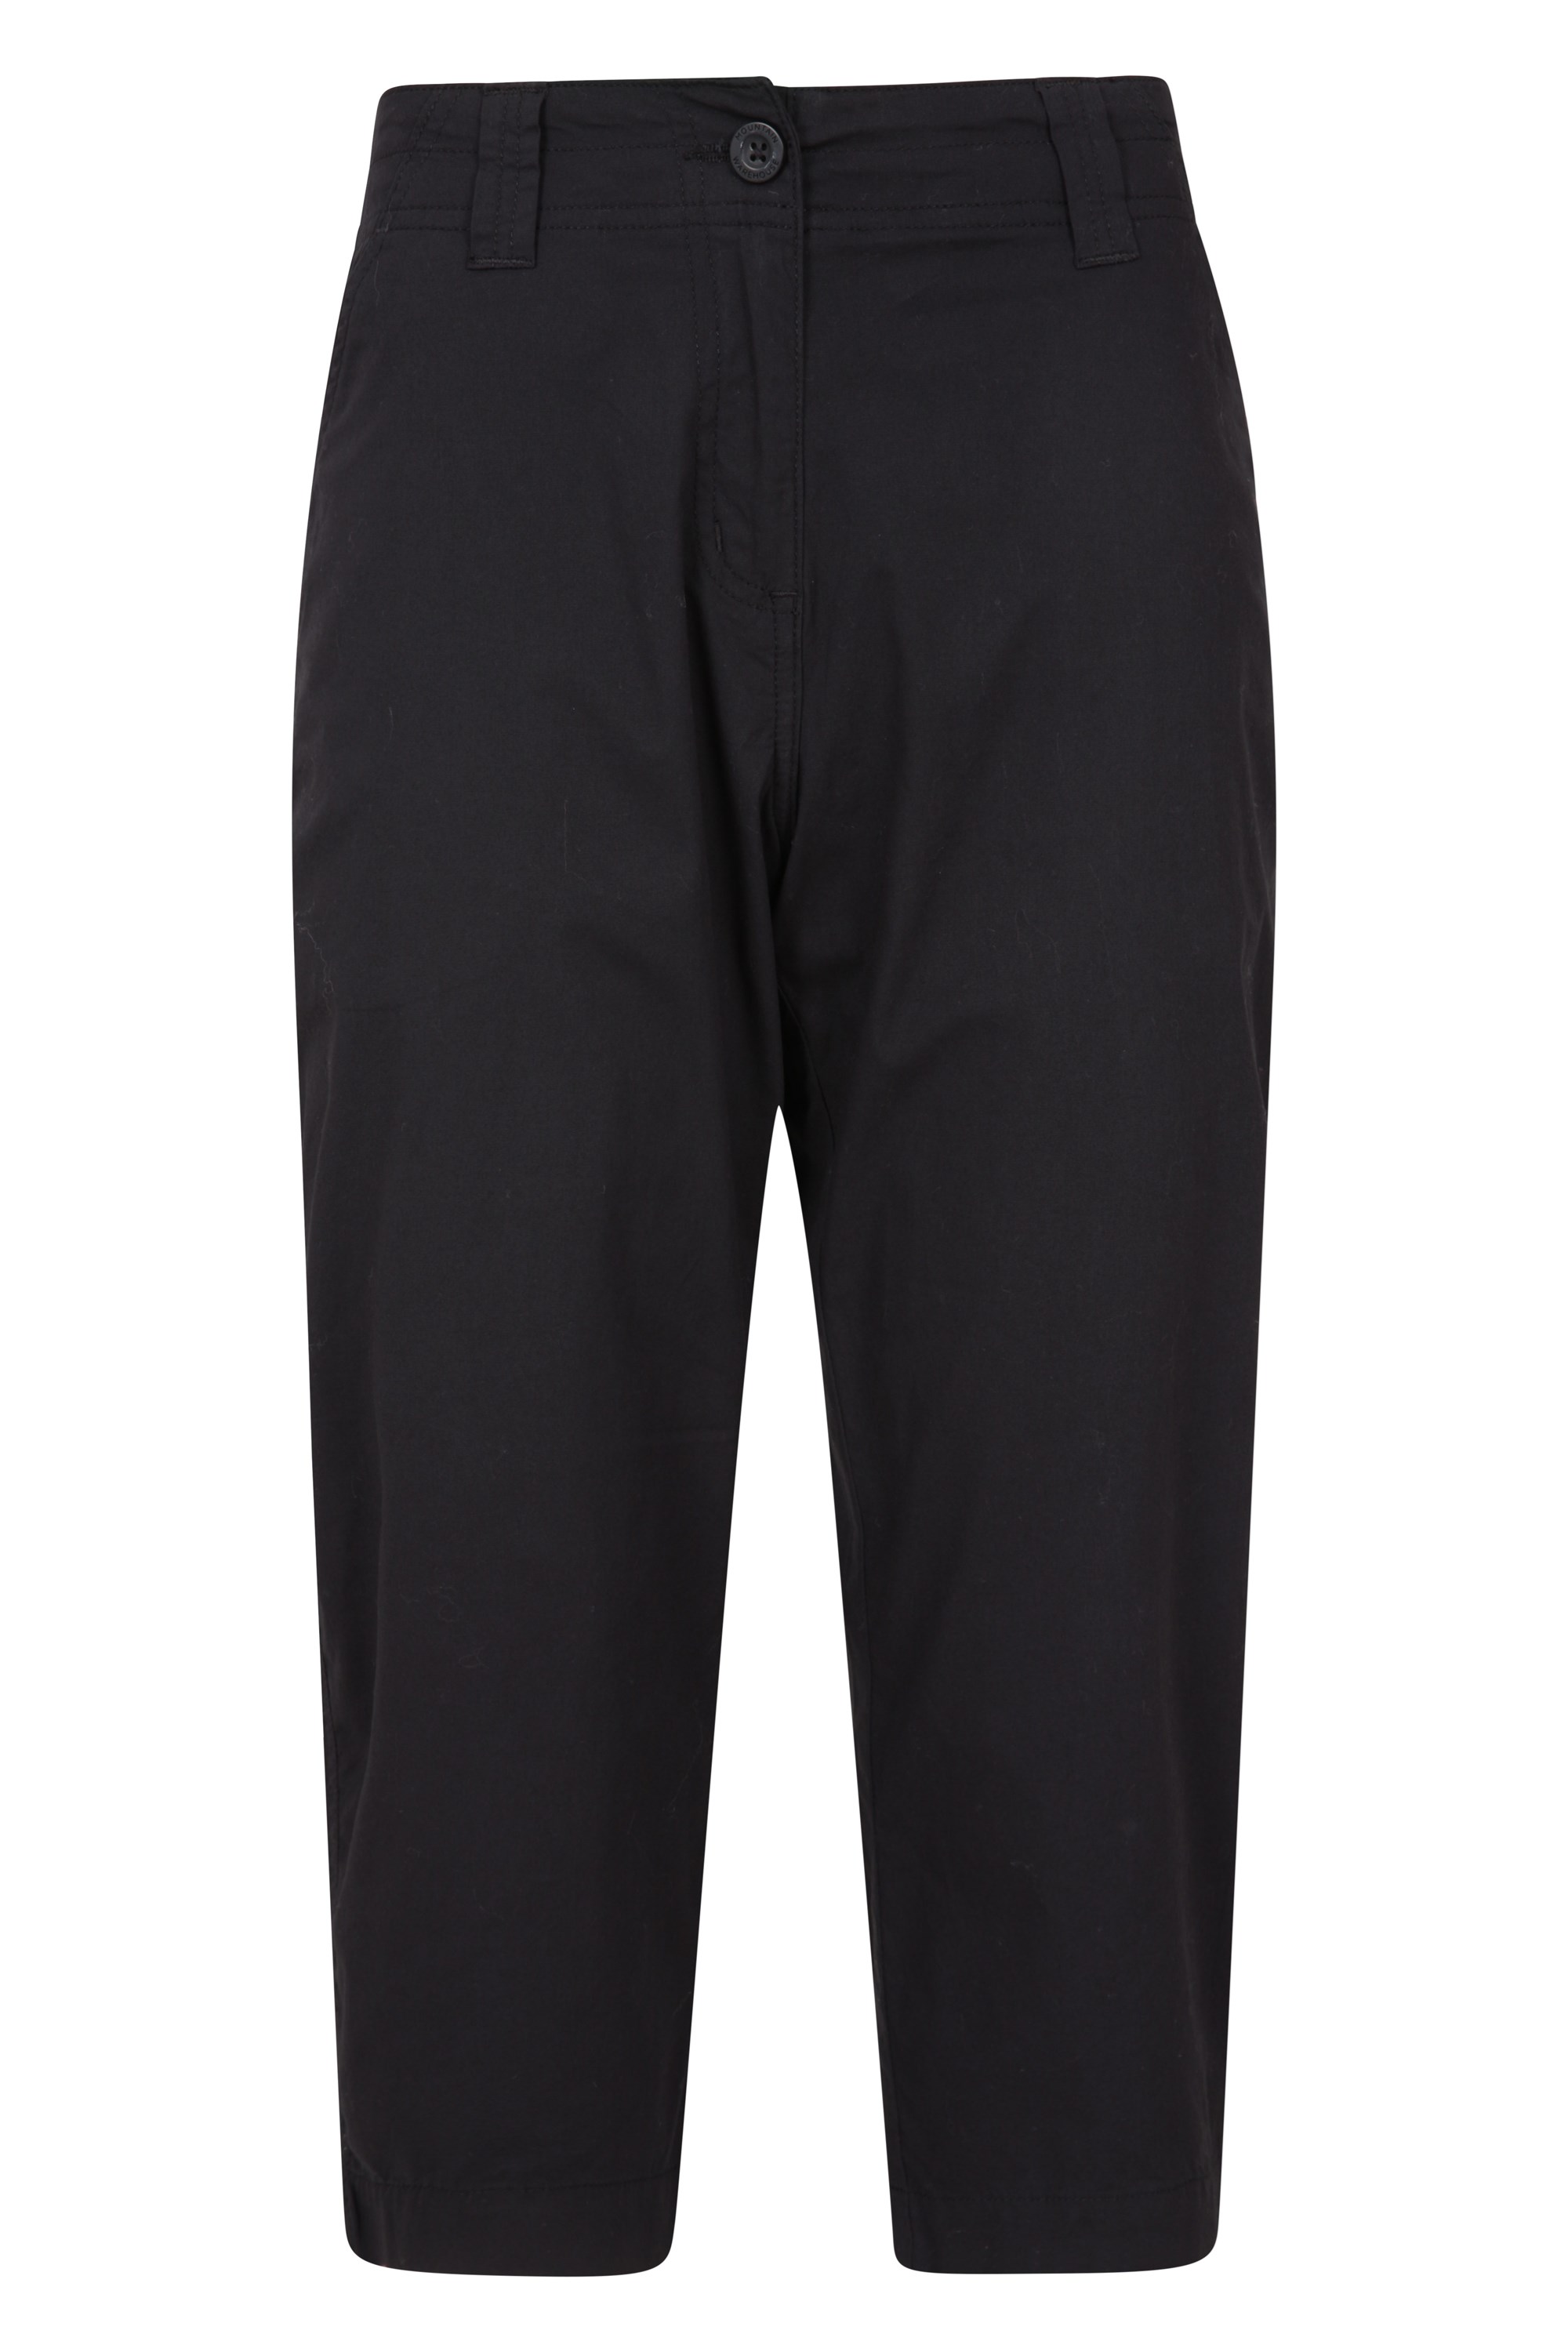 Buy Columbia women regular stretchable plain capri pants black